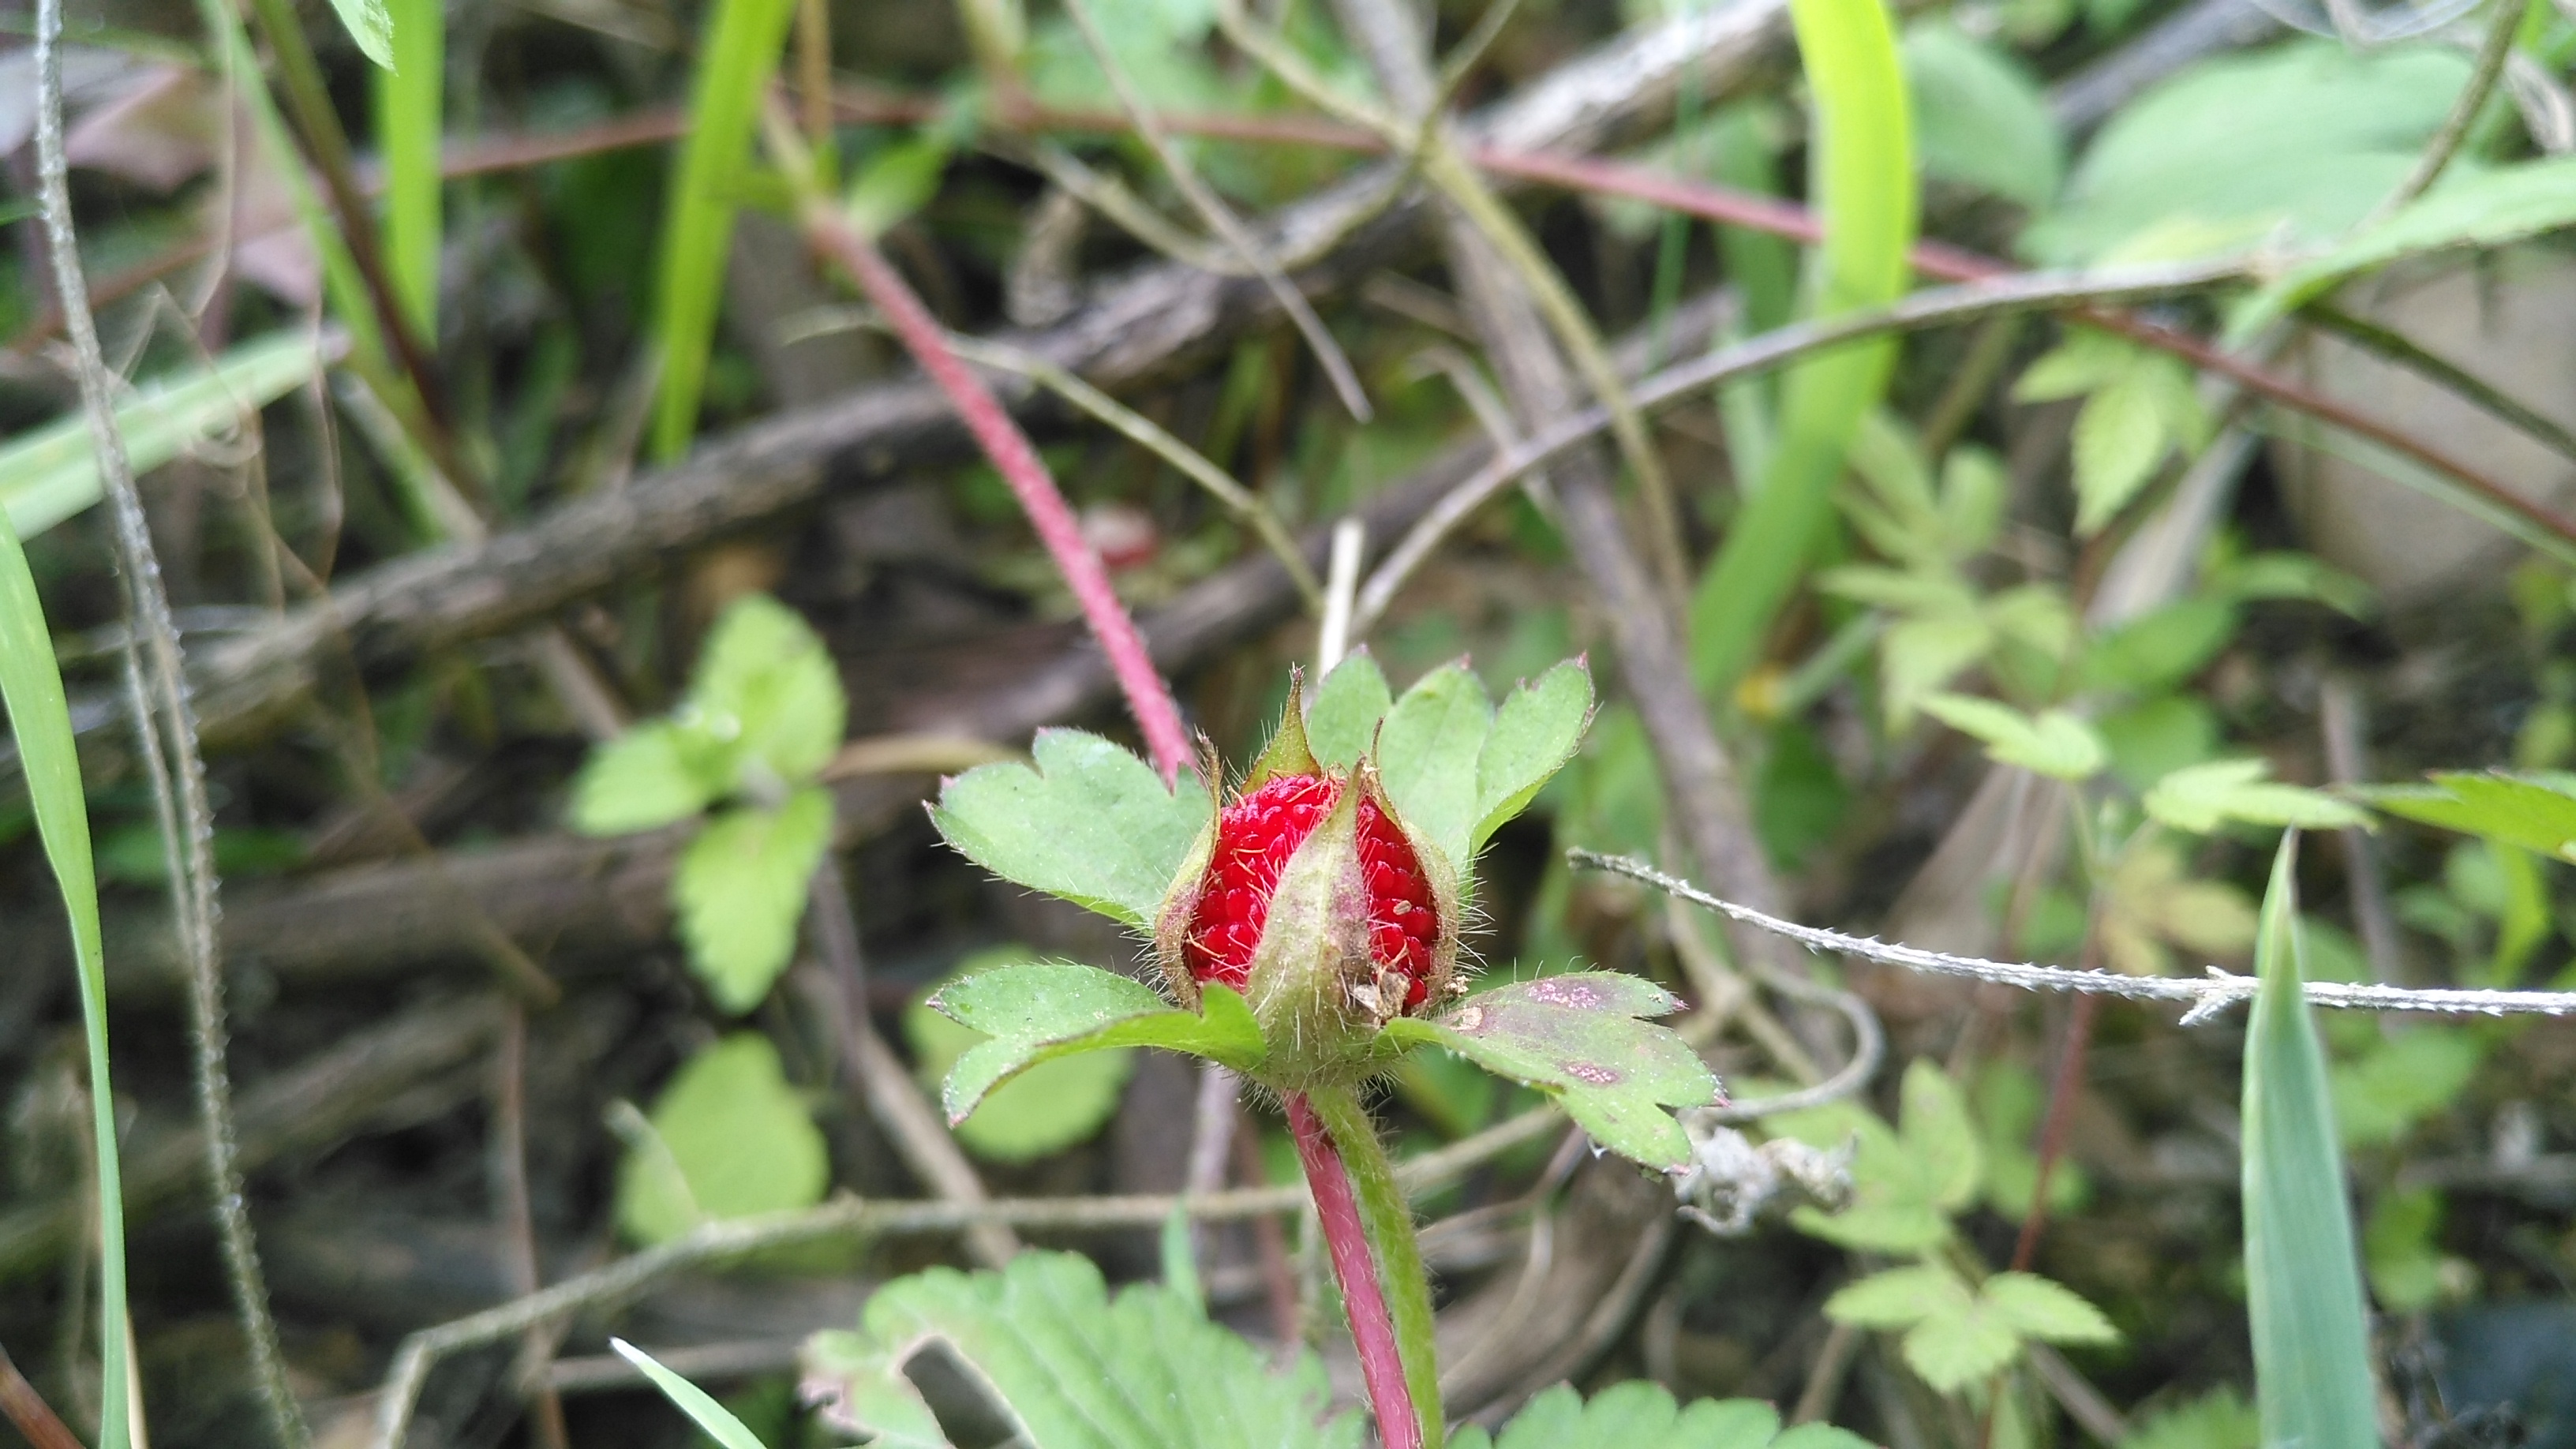 农村常见的野草莓,蛇给它吐口水,果子不好吃却很好看